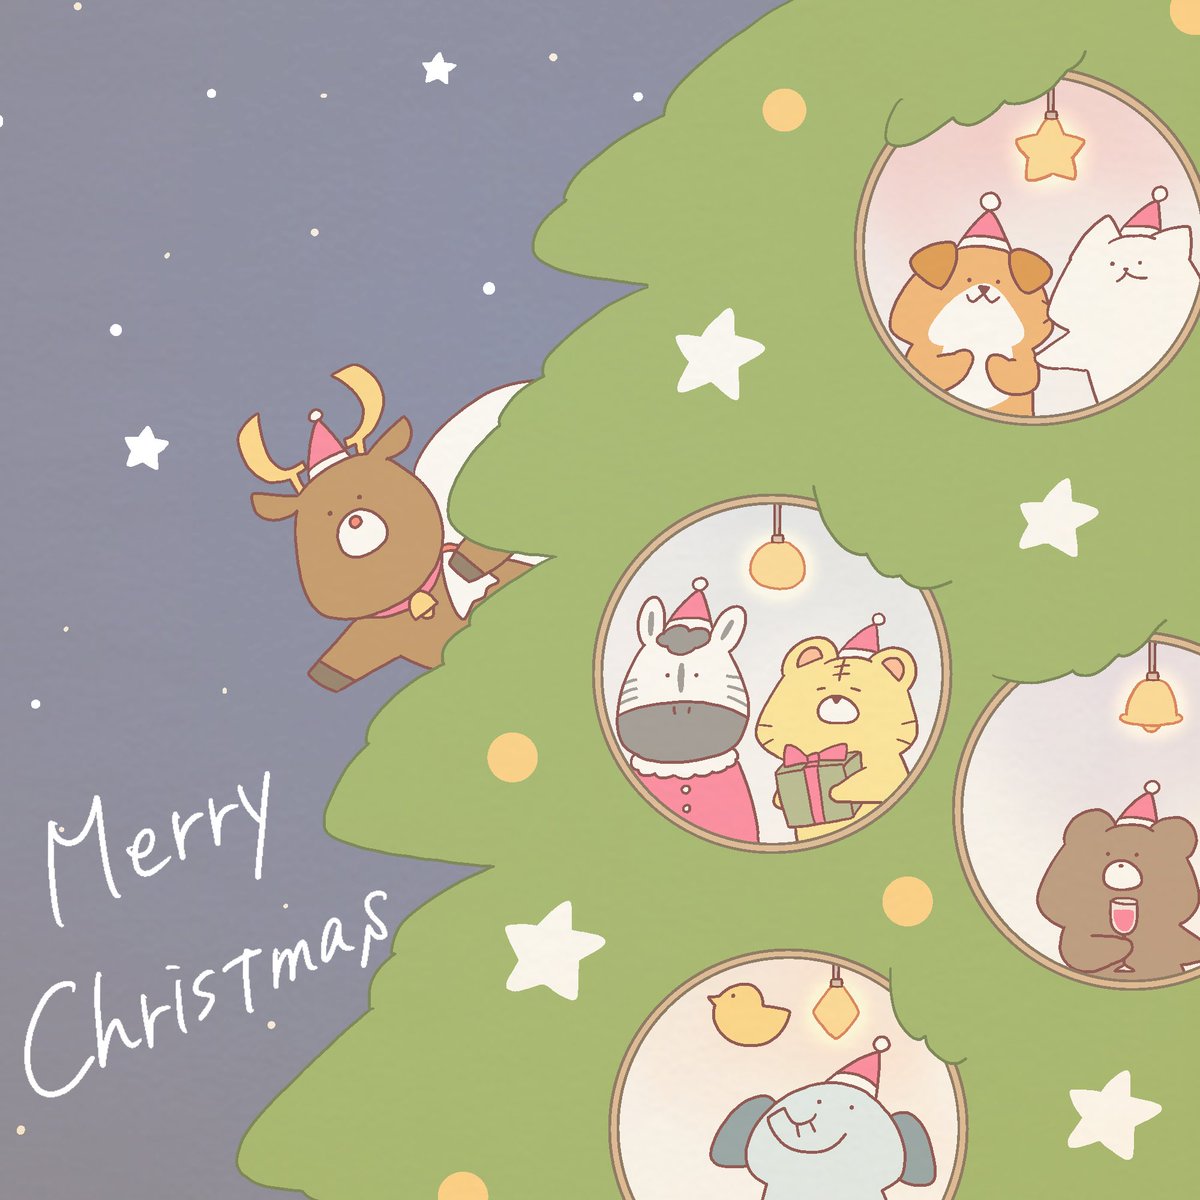 「メリークリスマス素敵な夜をお過ごしください#MerryChristmas 」|猫原のしのイラスト